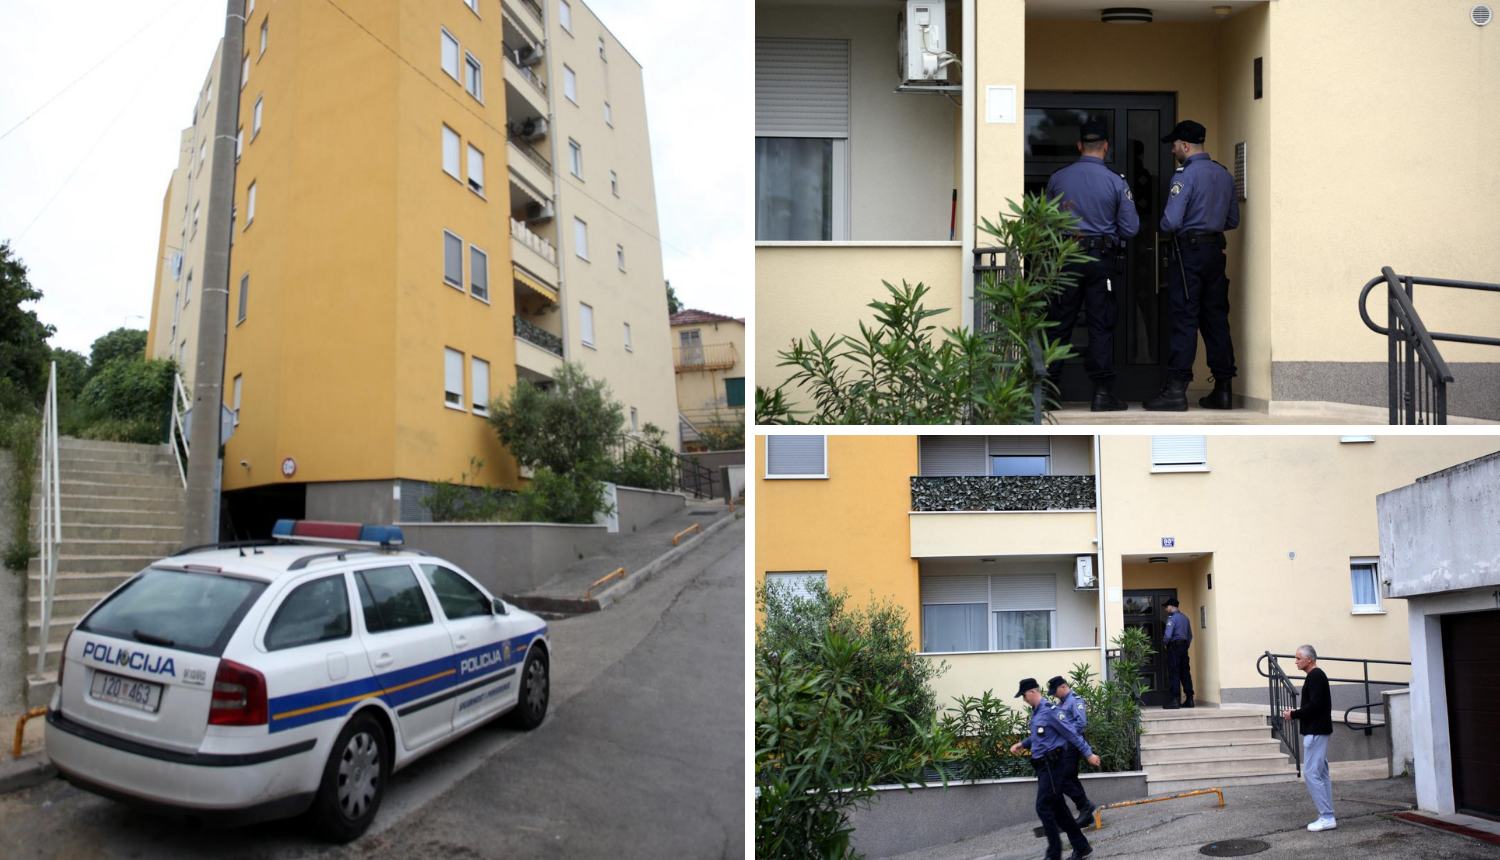 Pokušao ubiti susjeda u Splitu: Pavao (39) završio u pritvoru